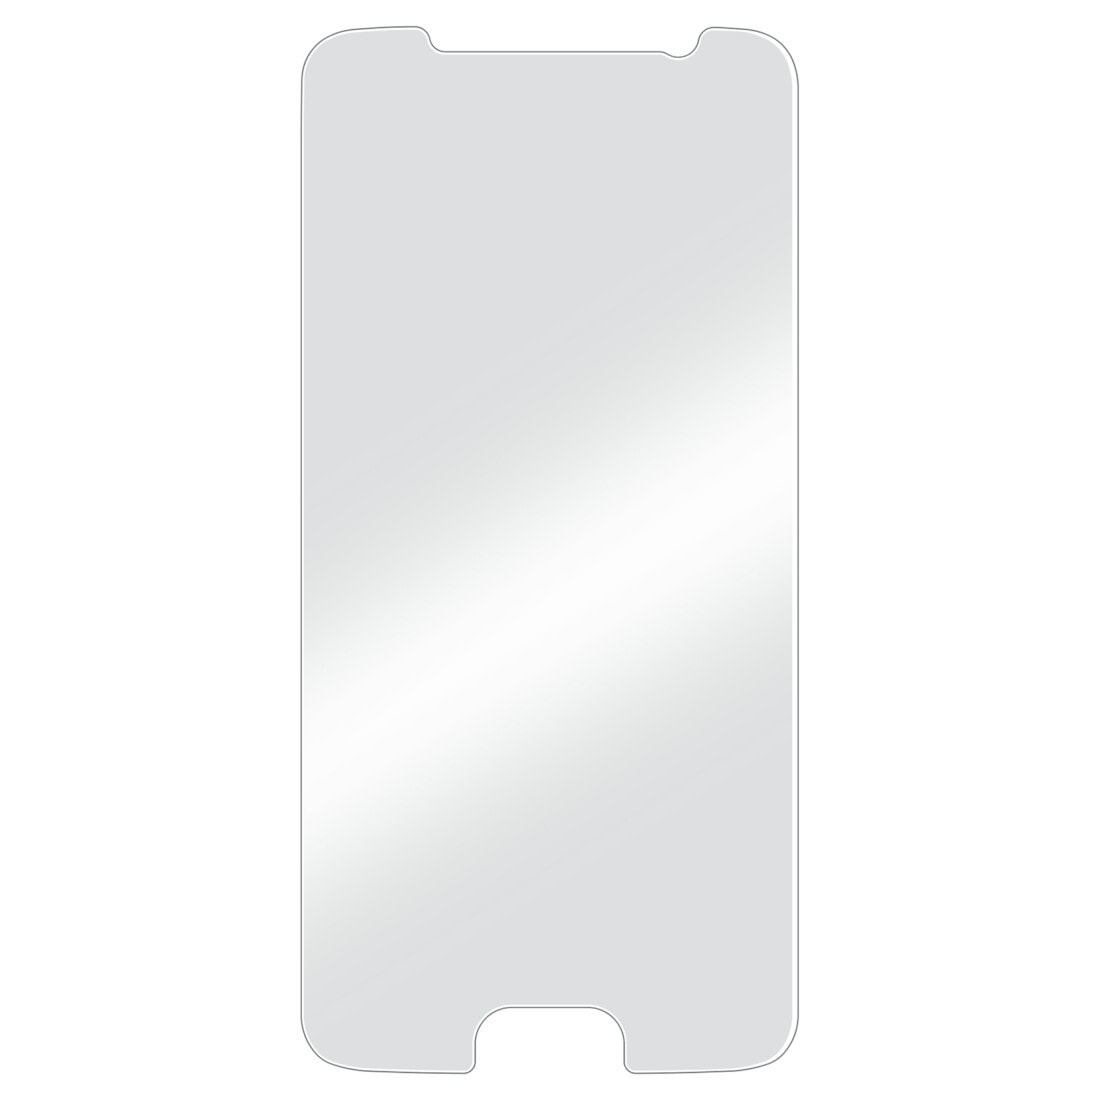 Hama Premium Crystal Glass Прозрачная защитная пленка Мобильный телефон / смартфон Samsung 1 шт 00173741